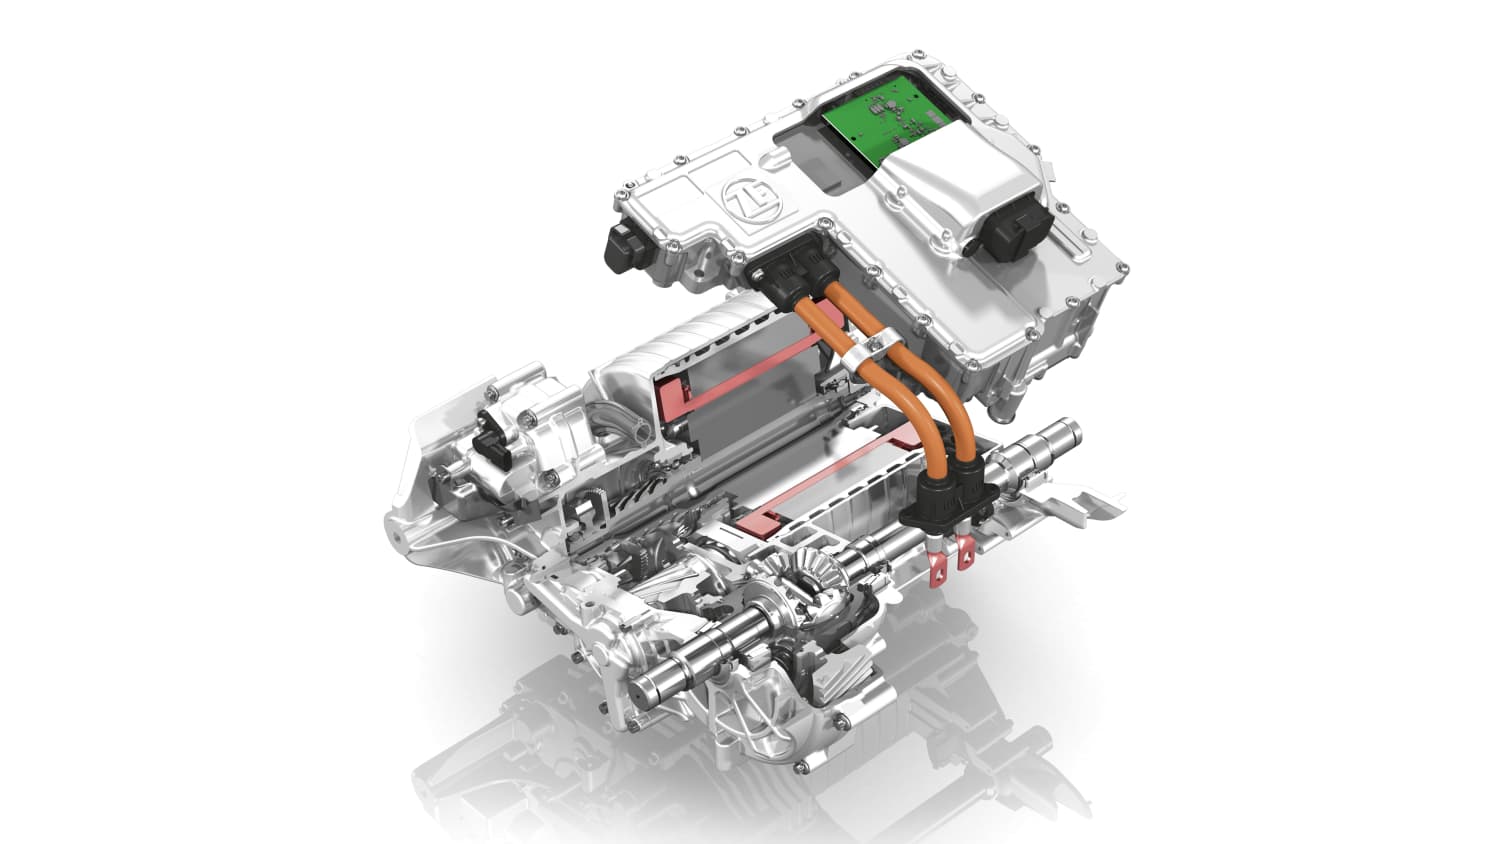 ADAC Ratgeber: Elektroantrieb und Elektromotor – Aufbau und Funktion